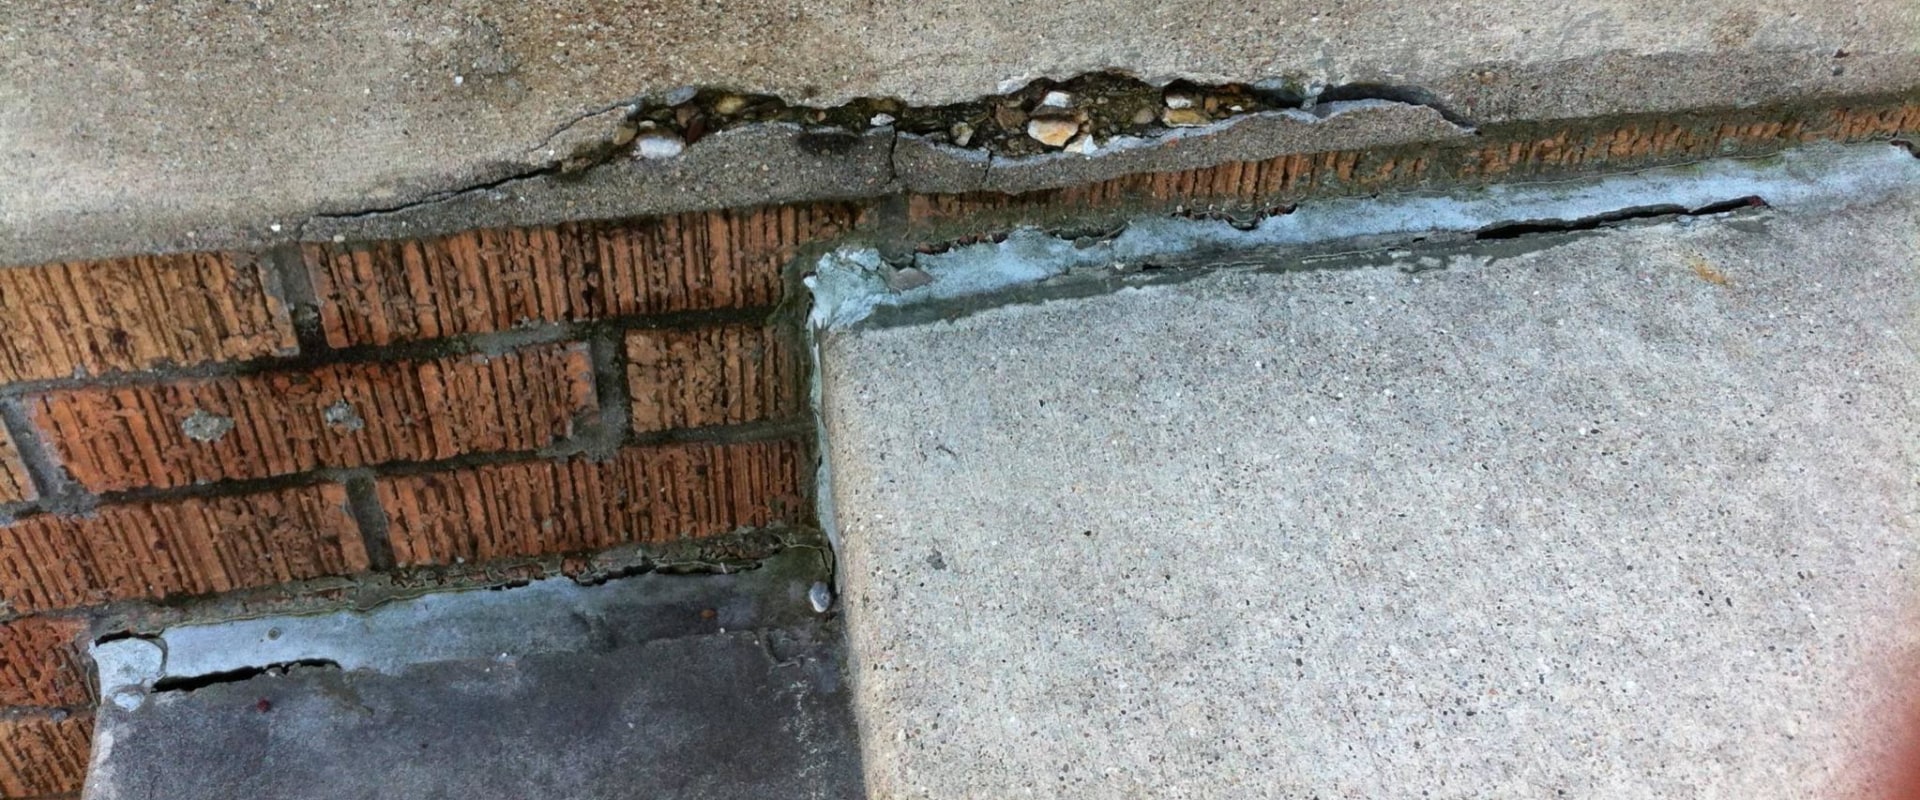 How repair concrete slab?